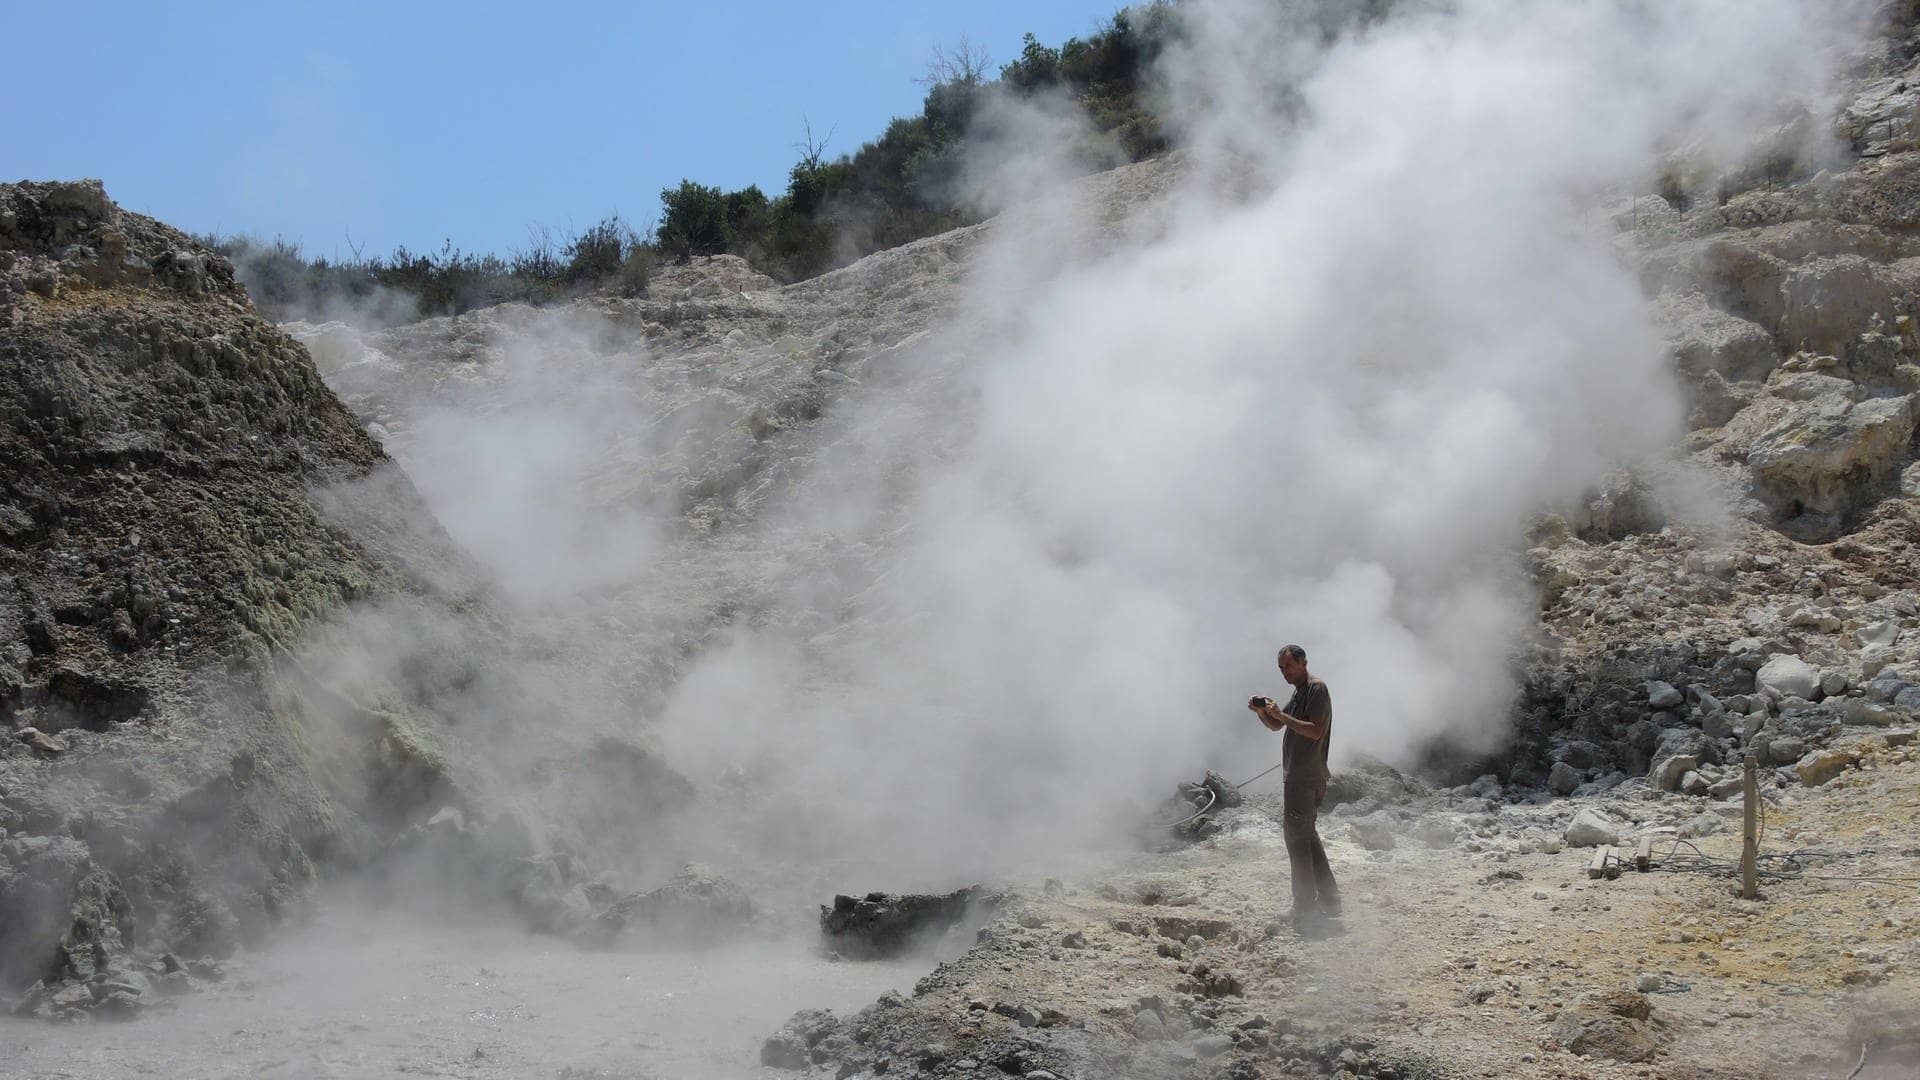 Supervulkan: Ein Geologe macht Fotos nahe einer Rauchsäule auf dem Gebiet der Phlegräischen Felder in Pozzuoli